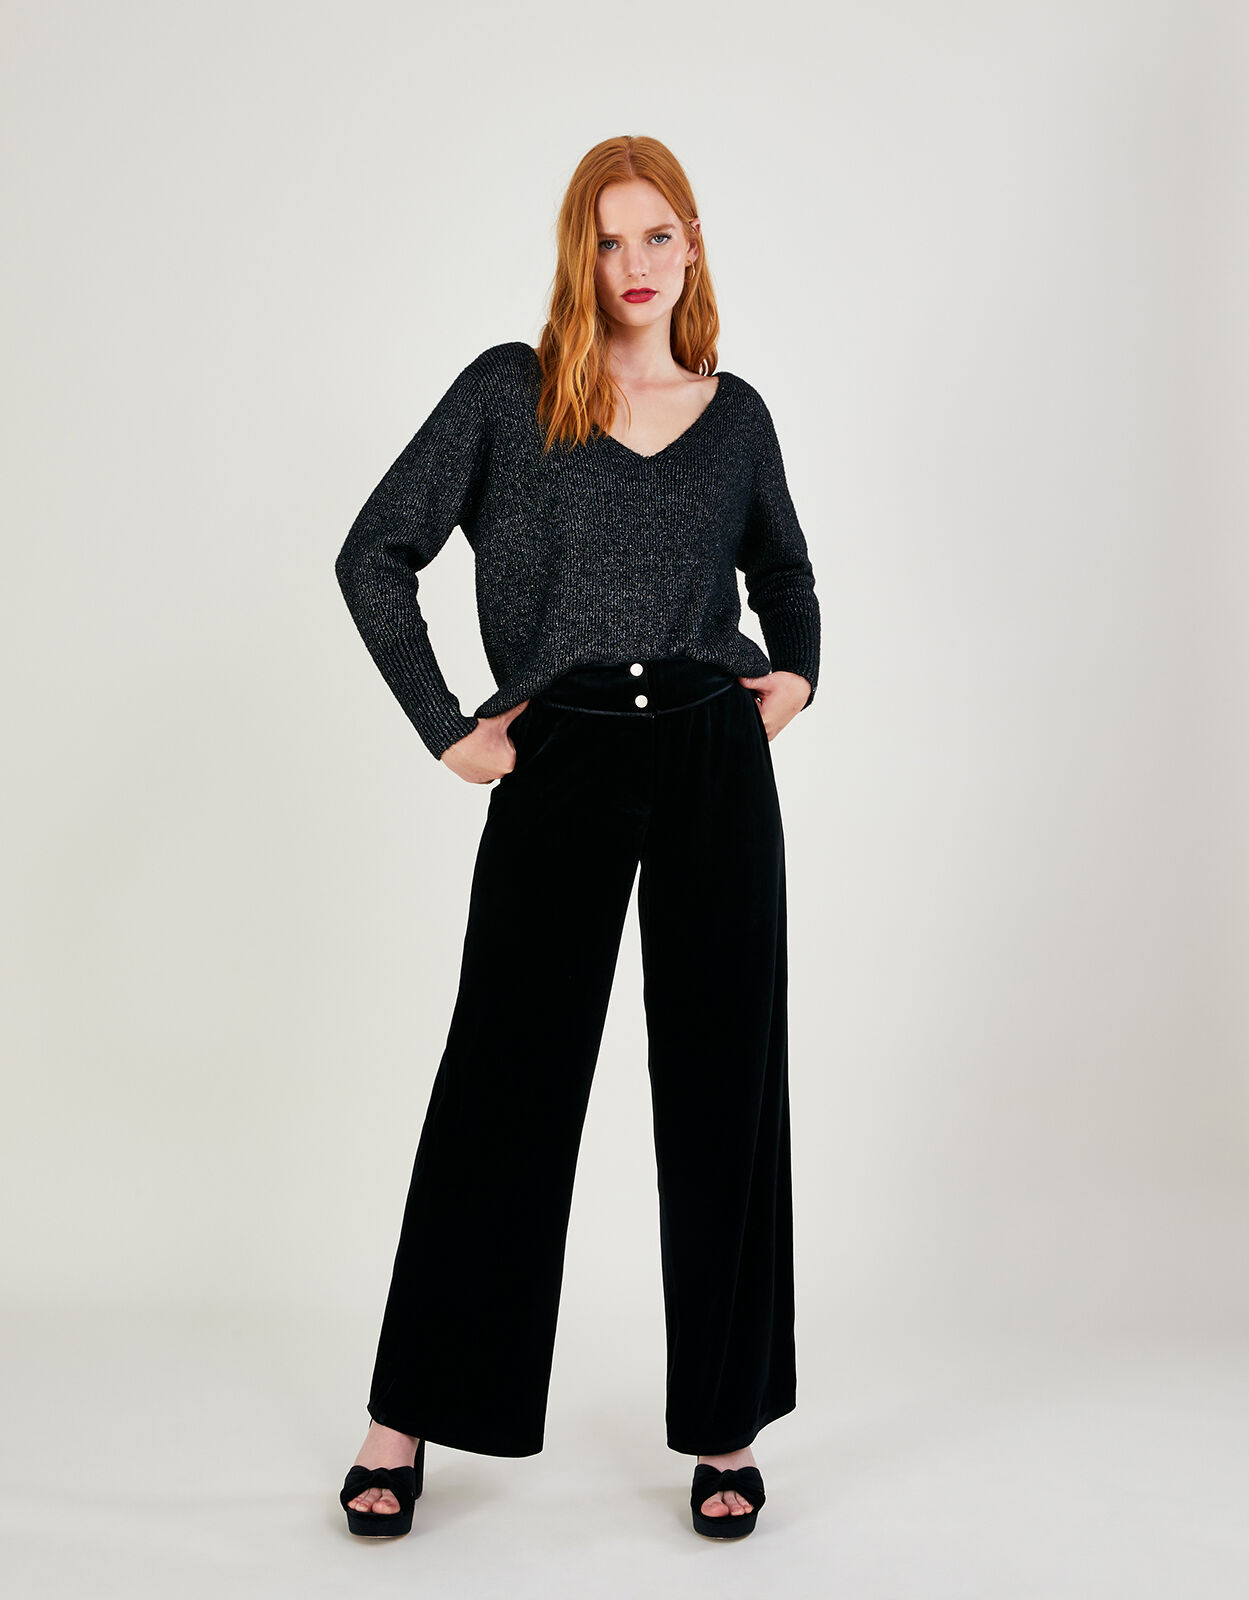 Pants Velvet Fashion Design | Velvet Trousers Design | Runway Trousers  Women Black - 22 - Aliexpress